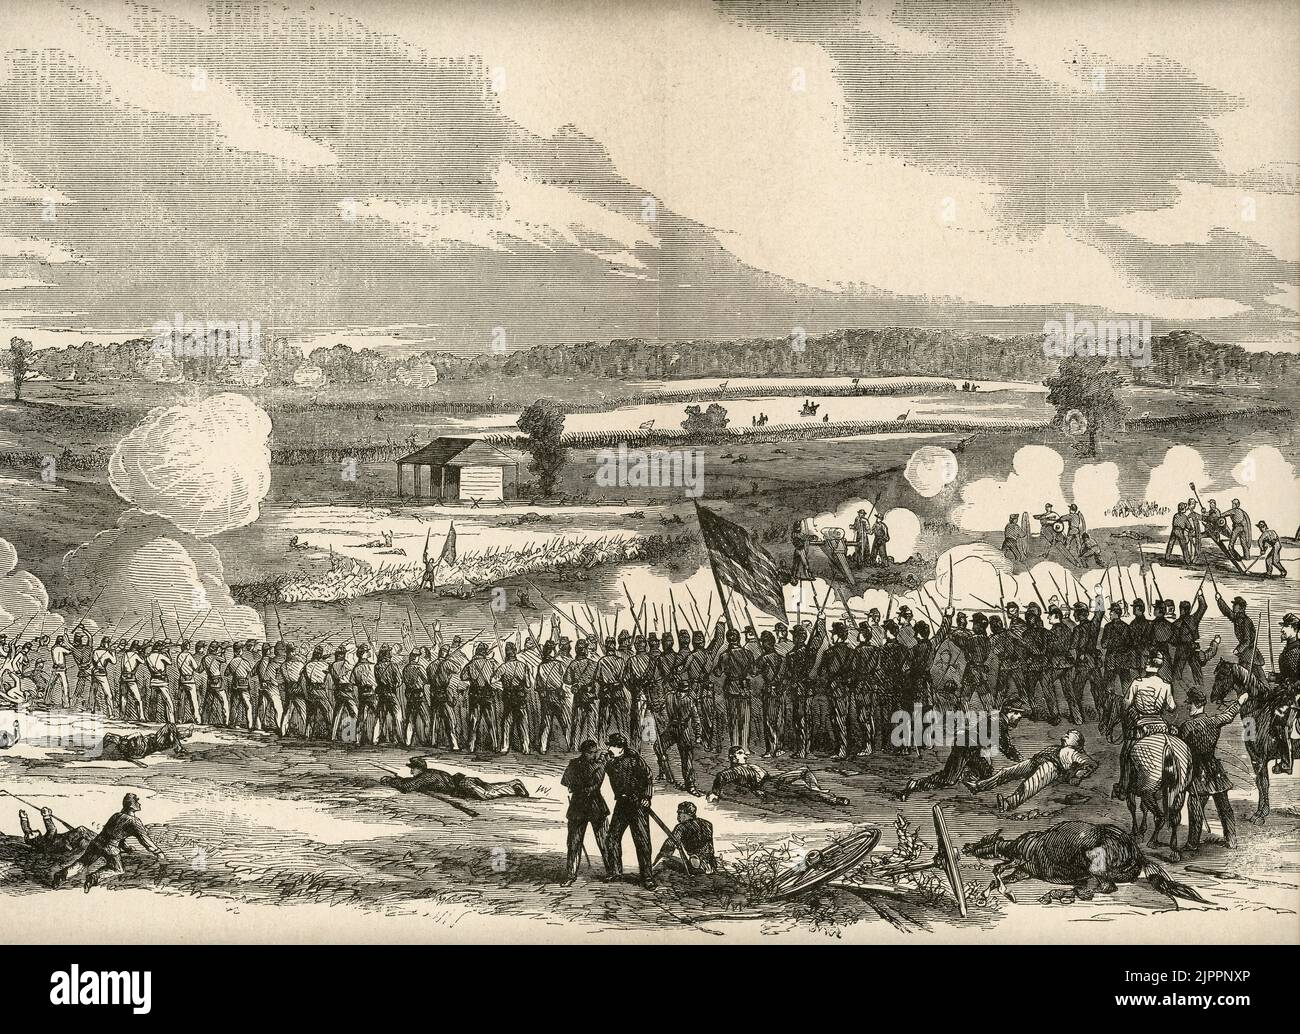 Die Schlacht von Perryville, Kentucky während des amerikanischen Bürgerkrieges, fand am 8. Oktober 1862 statt Stockfoto